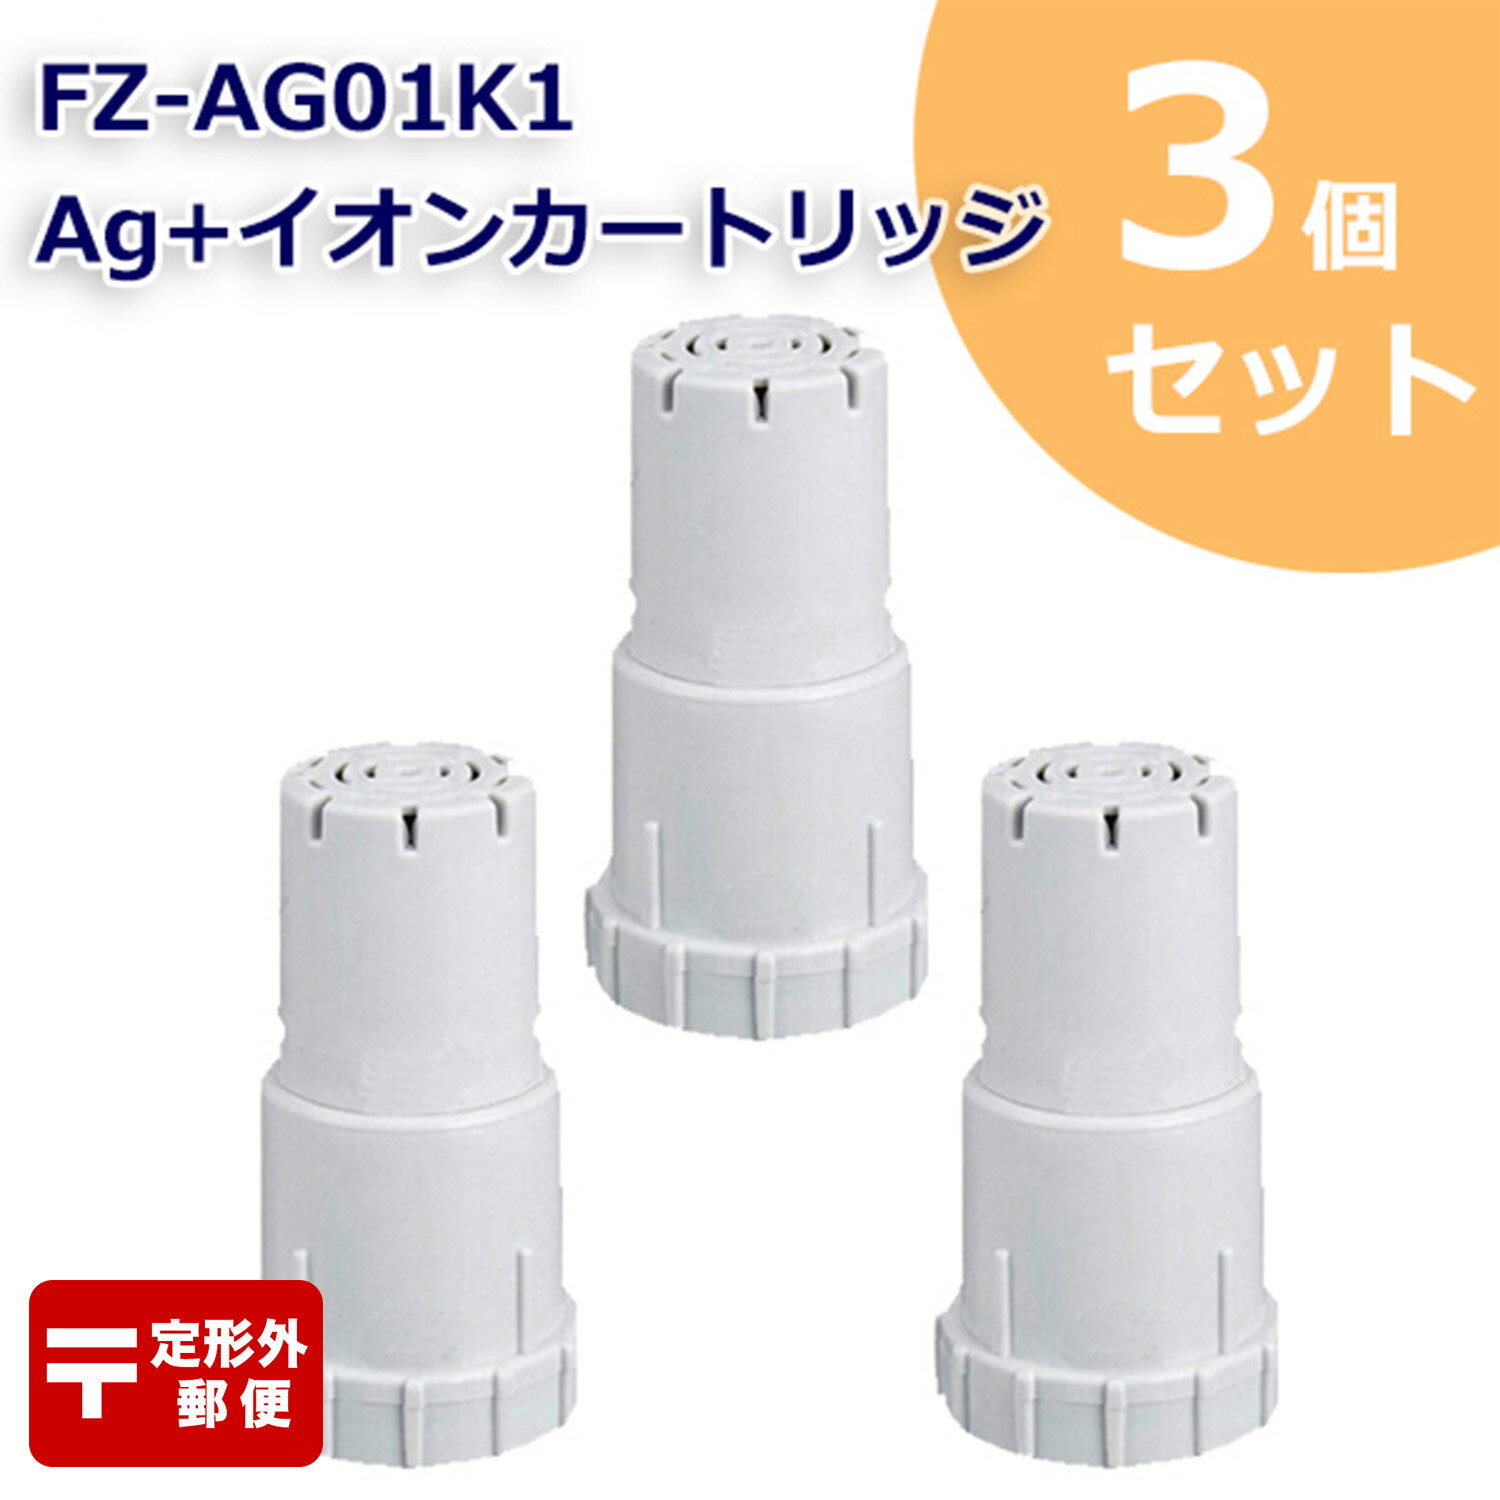 【レビュー特典あり】FZ-AG01K2 Ag+イオンカートリッジ FZ-AG01K1 シャープ加湿空気清浄機/加湿器 交換用 ag イオンカートリッジ fz-ago1k1 （互換品/3個入り） SHARP 互換 抗菌率99.9% 定形外郵便